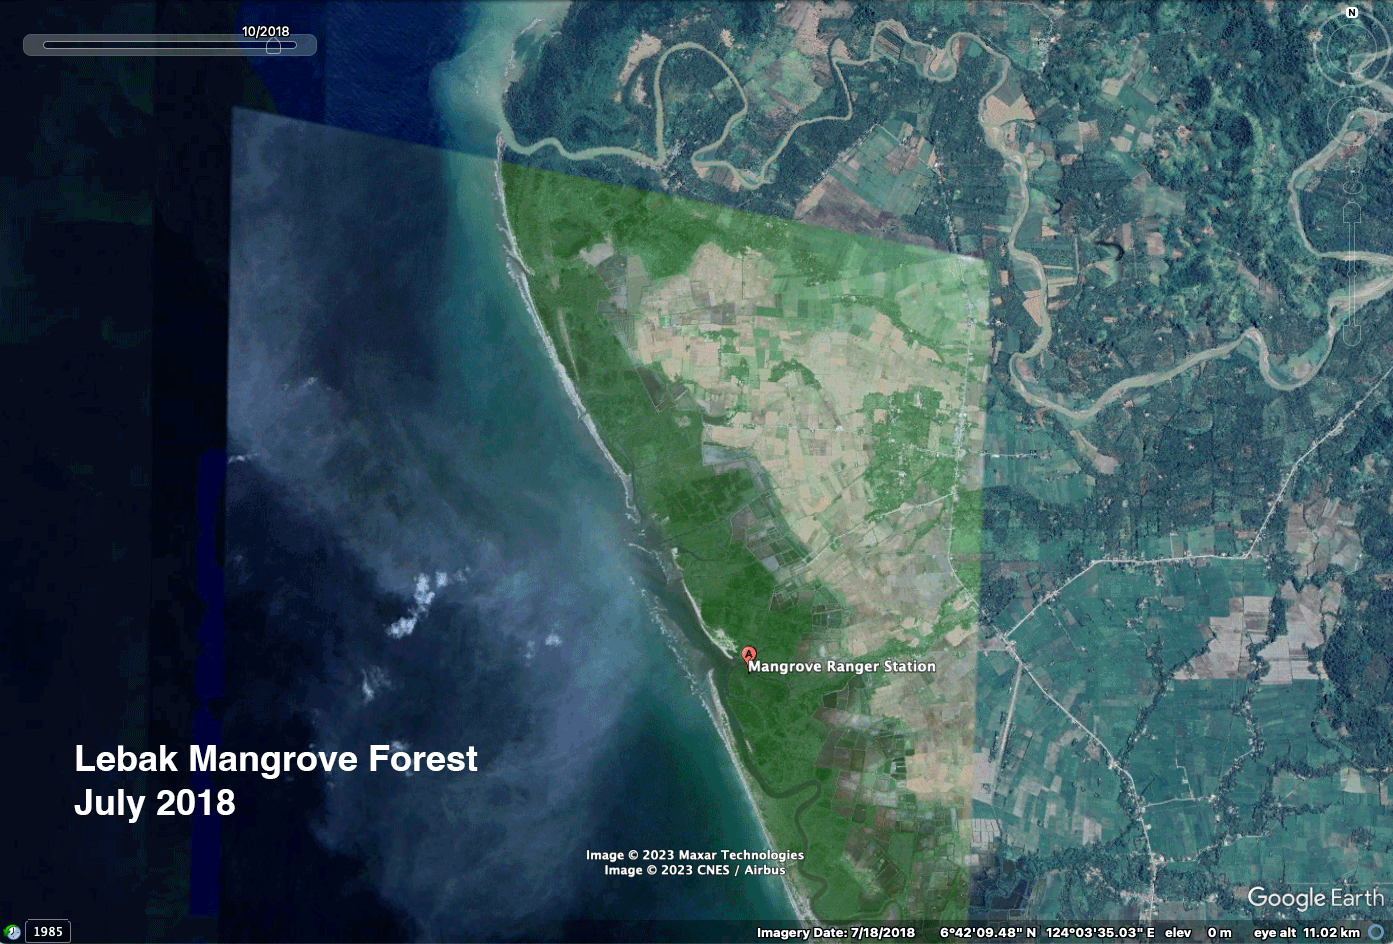 lebak mangrove